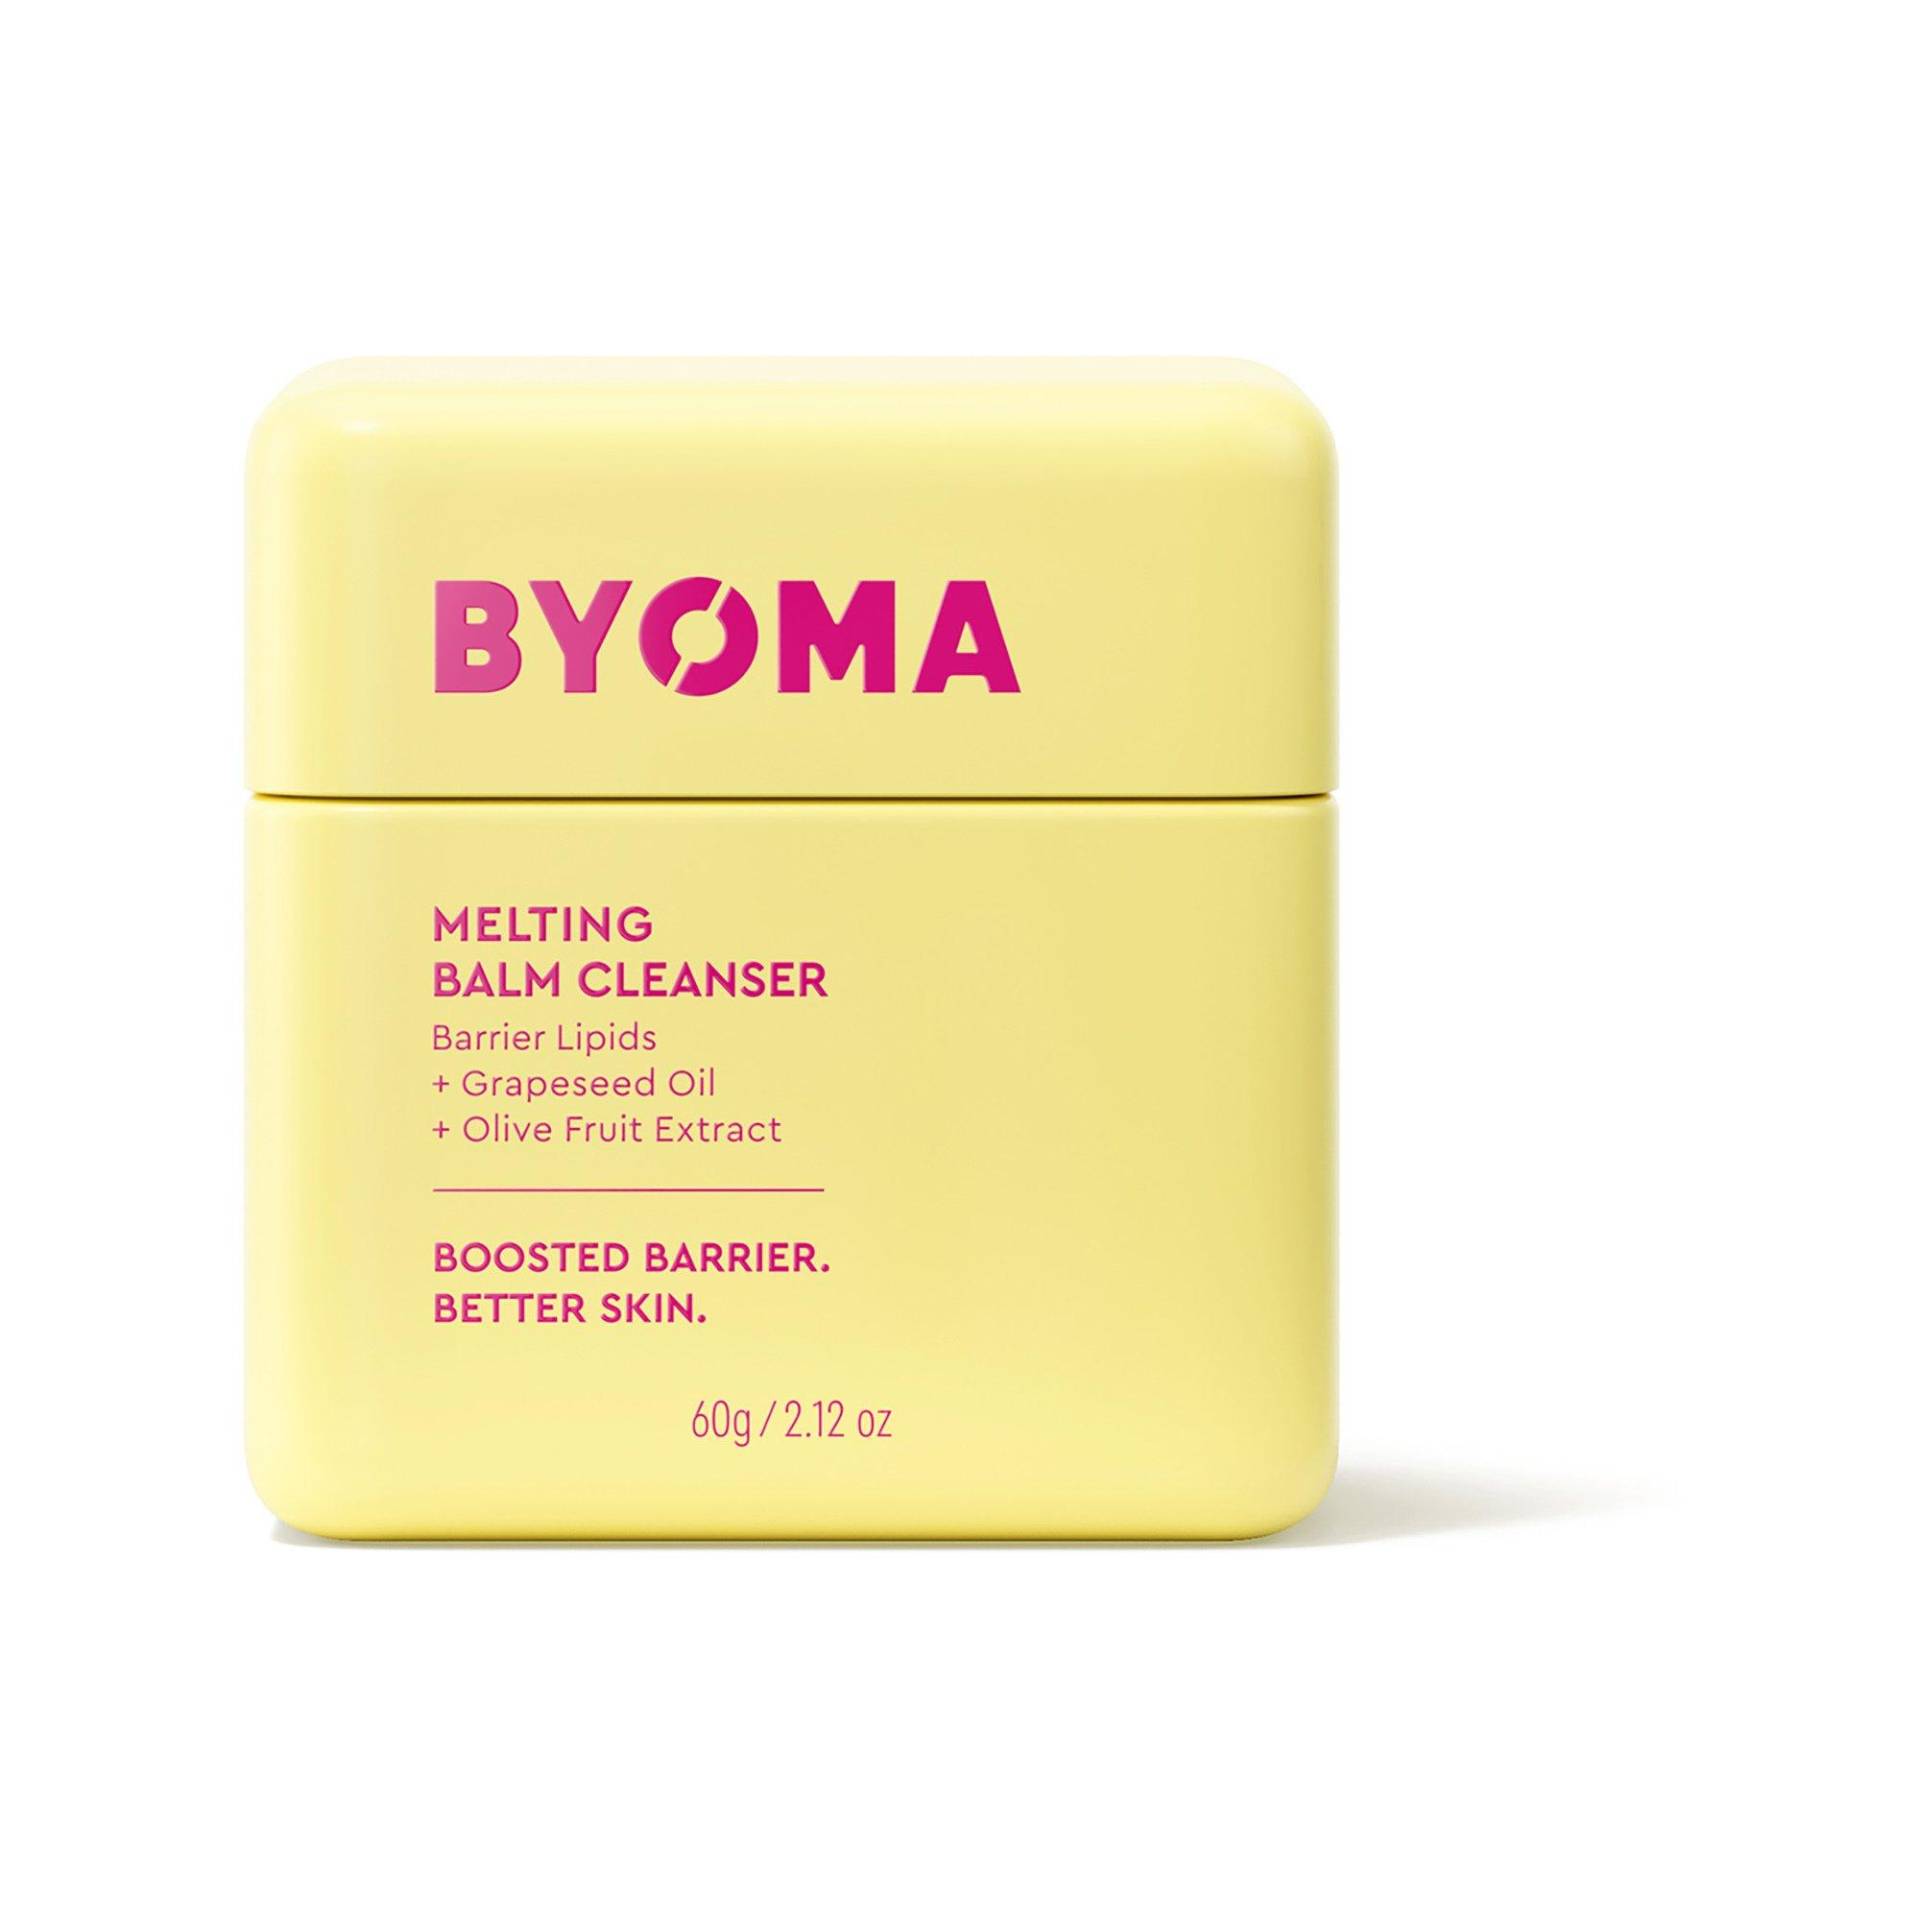 Melting Balm Cleanser - Gesichtsreinigungsbalsam Damen  60g von BYOMA